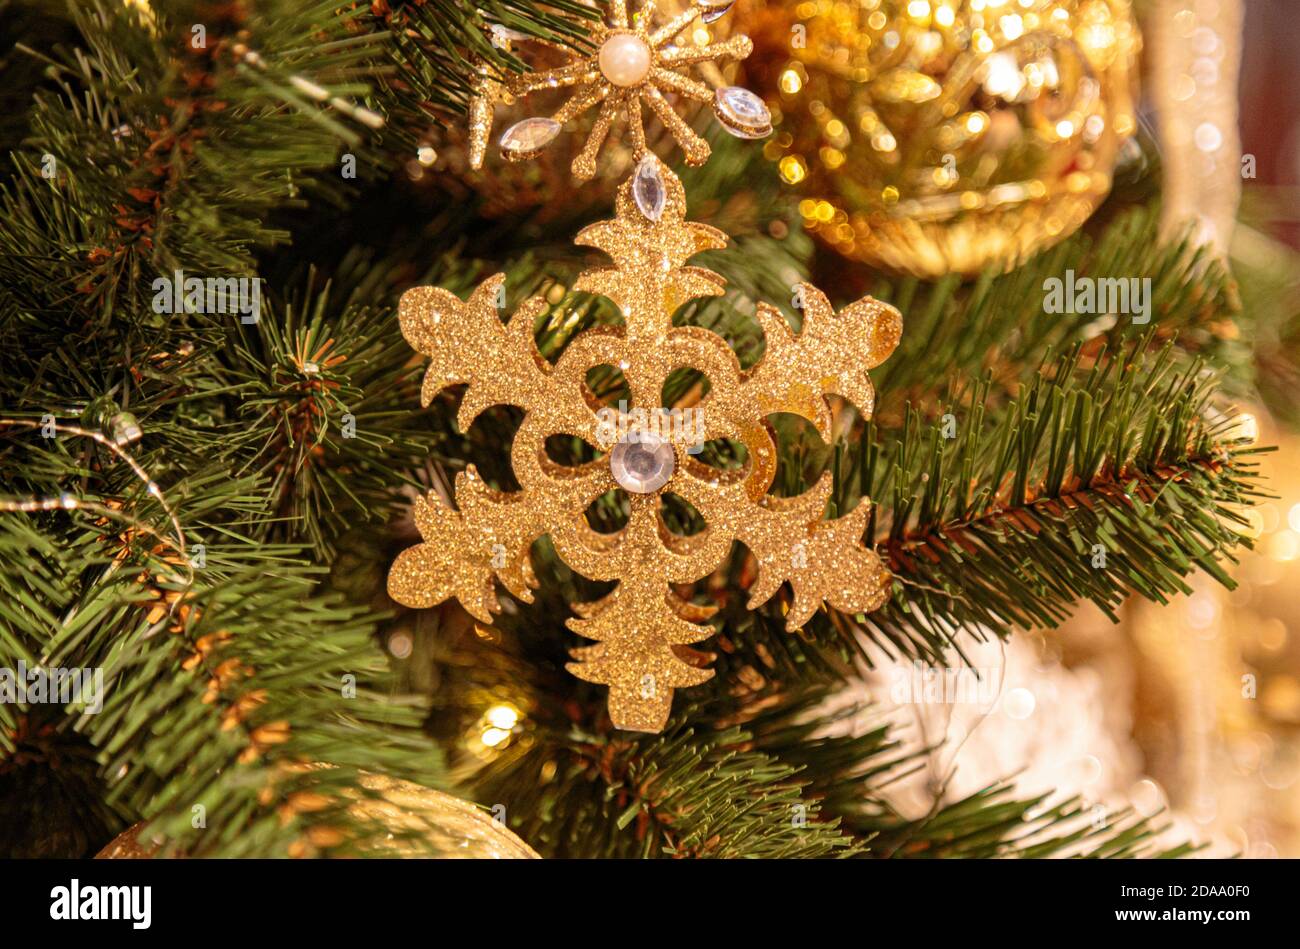 Fond de Noël avec flocon de neige doré décoratif, branches de sapin et cônes de pin Banque D'Images